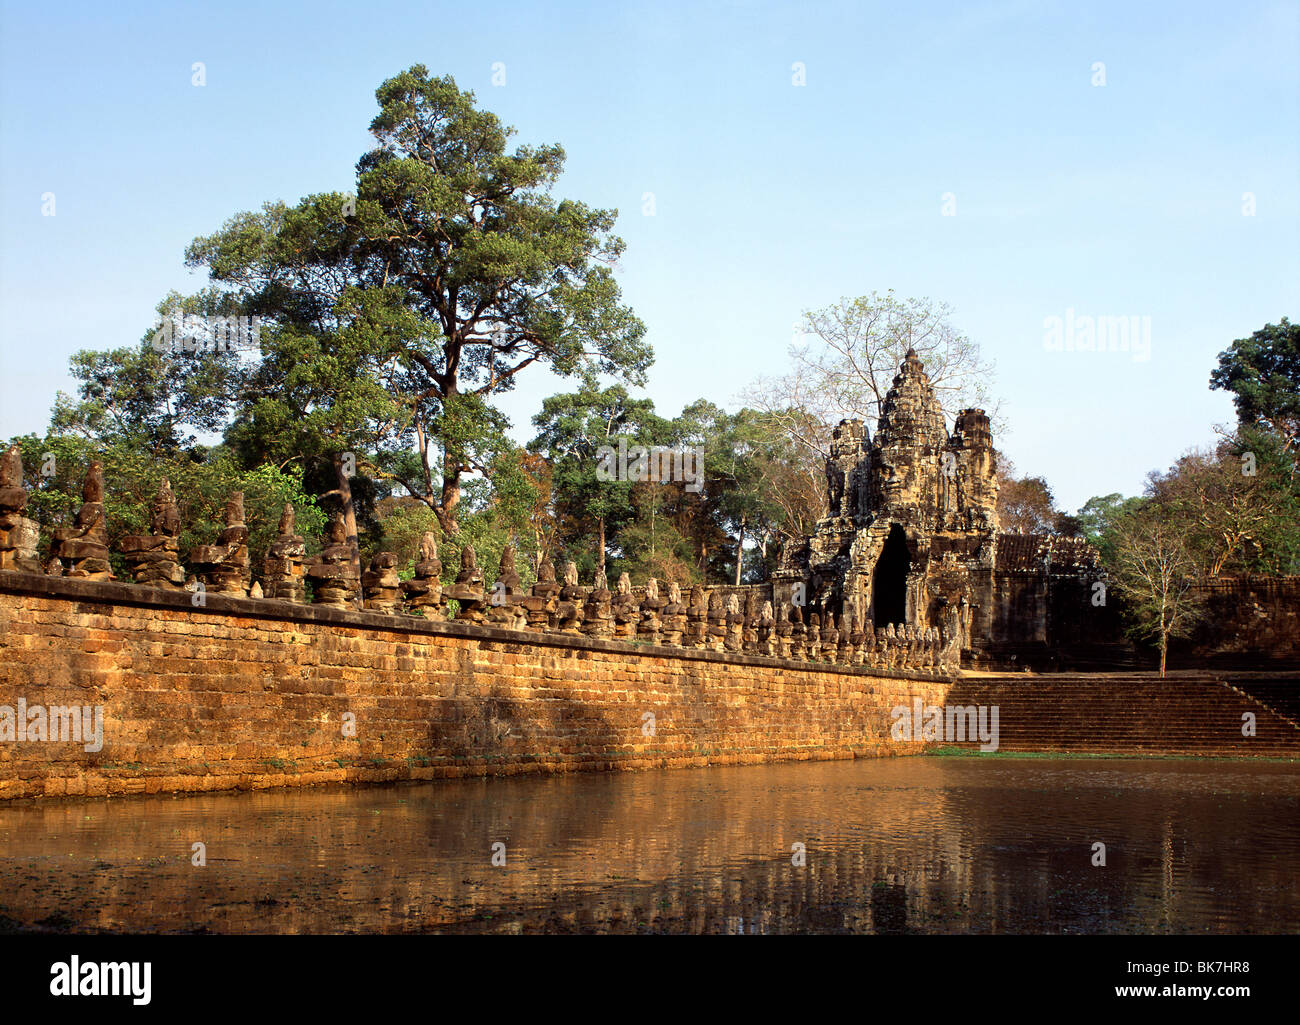 Porte Sud datant de la fin du 12ème siècle, Angkor Thom, Angkor, Site du patrimoine mondial de l'UNESCO, au Cambodge Banque D'Images